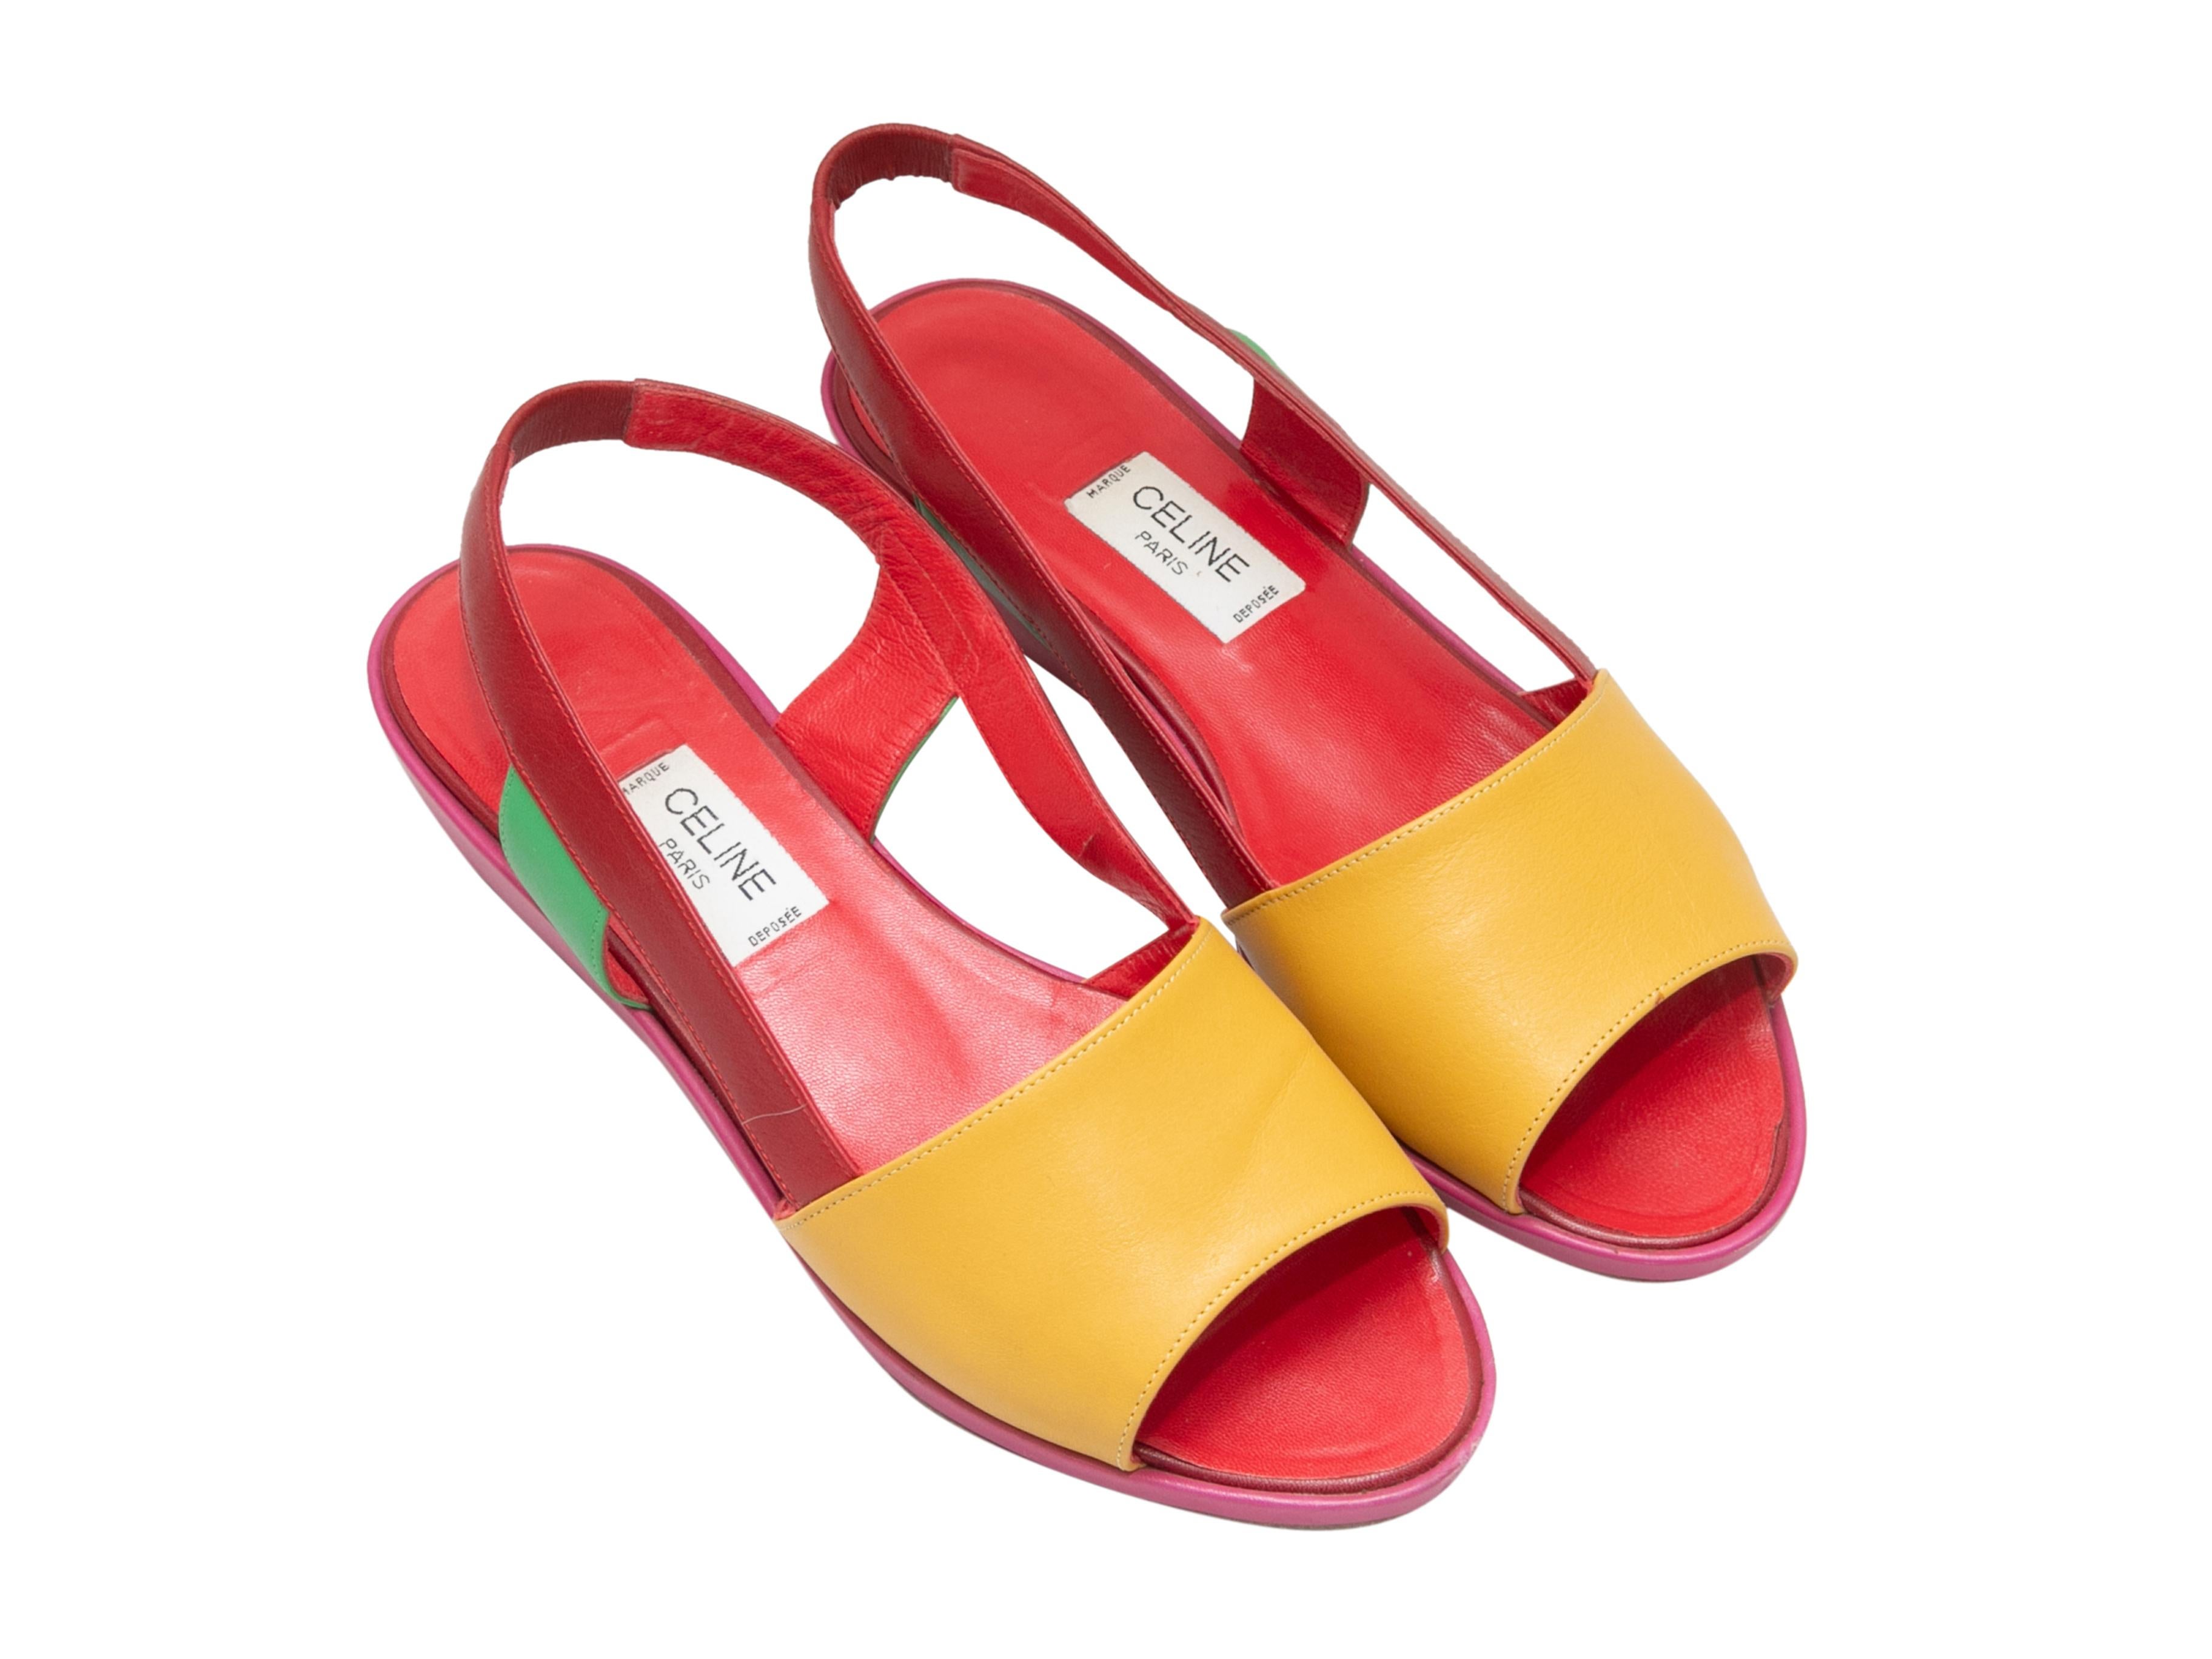 Vintage multicolor leather slingback sandals by Celine. Platform heels. 0.25